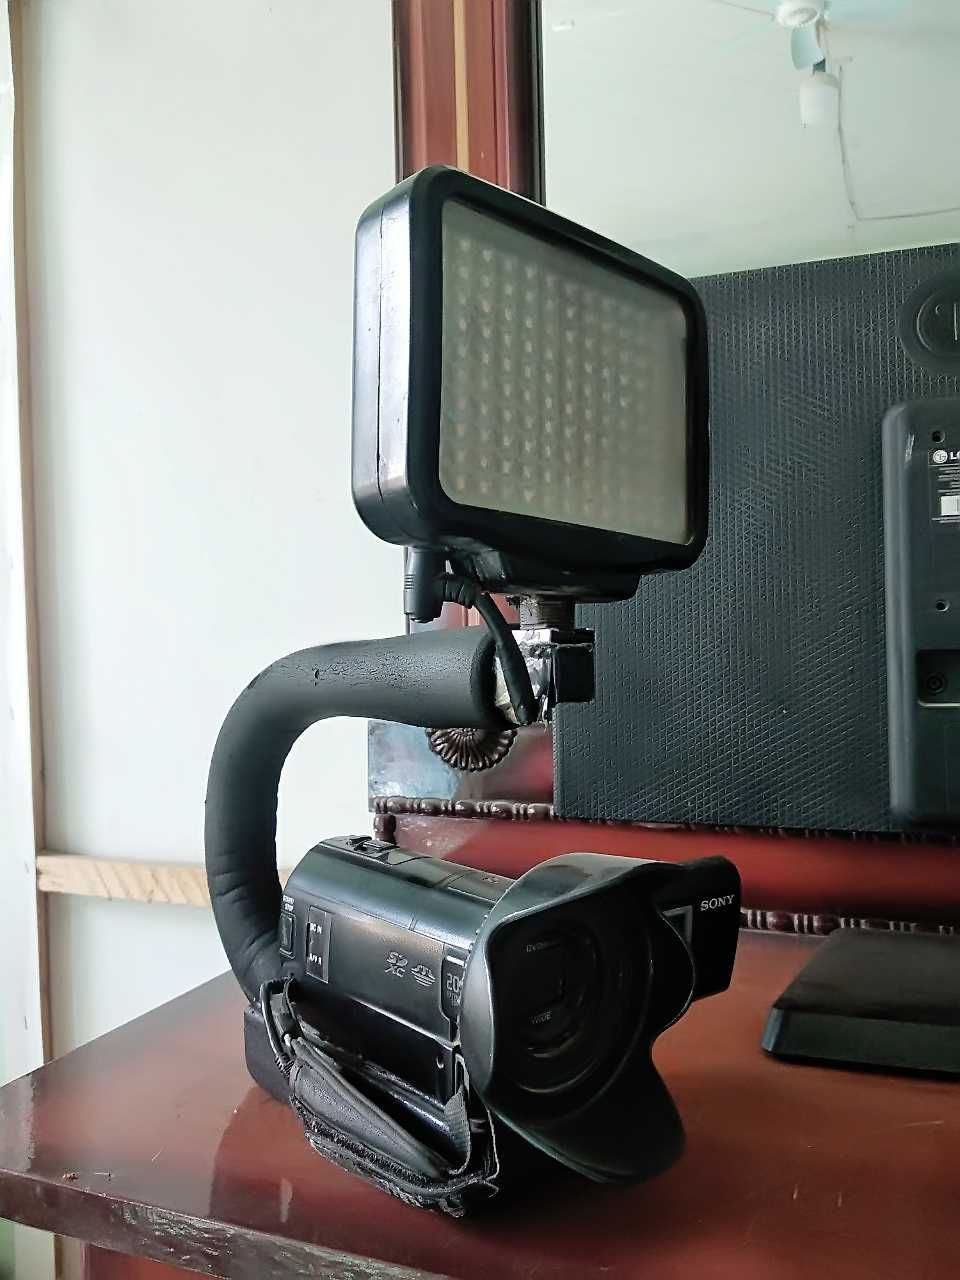 SONY PJ 580 kamera sotiladi